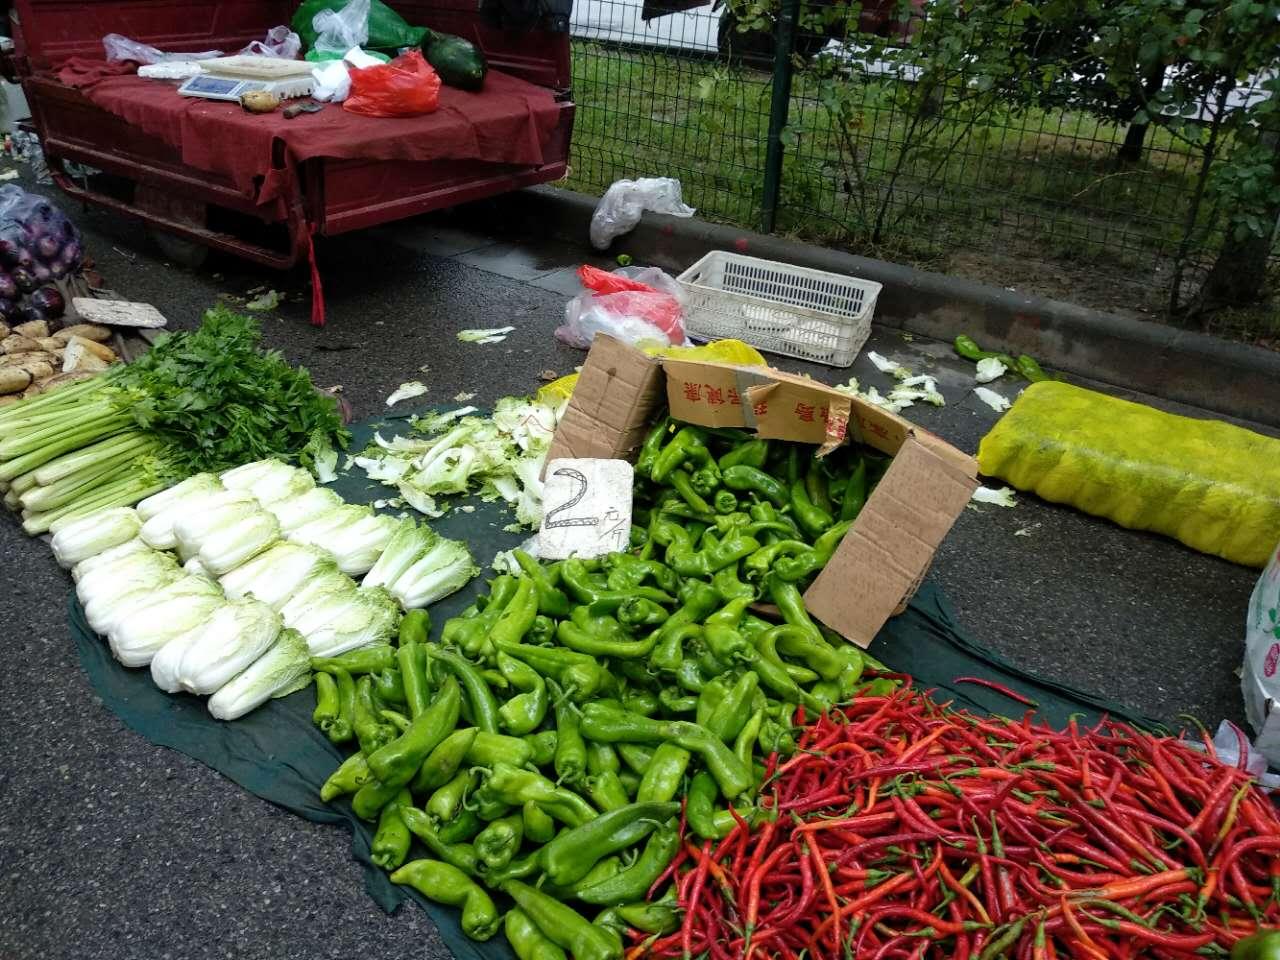 请点击此处输入图片描述  卖菜的商贩正在去掉蔬菜上烂掉的菜叶.